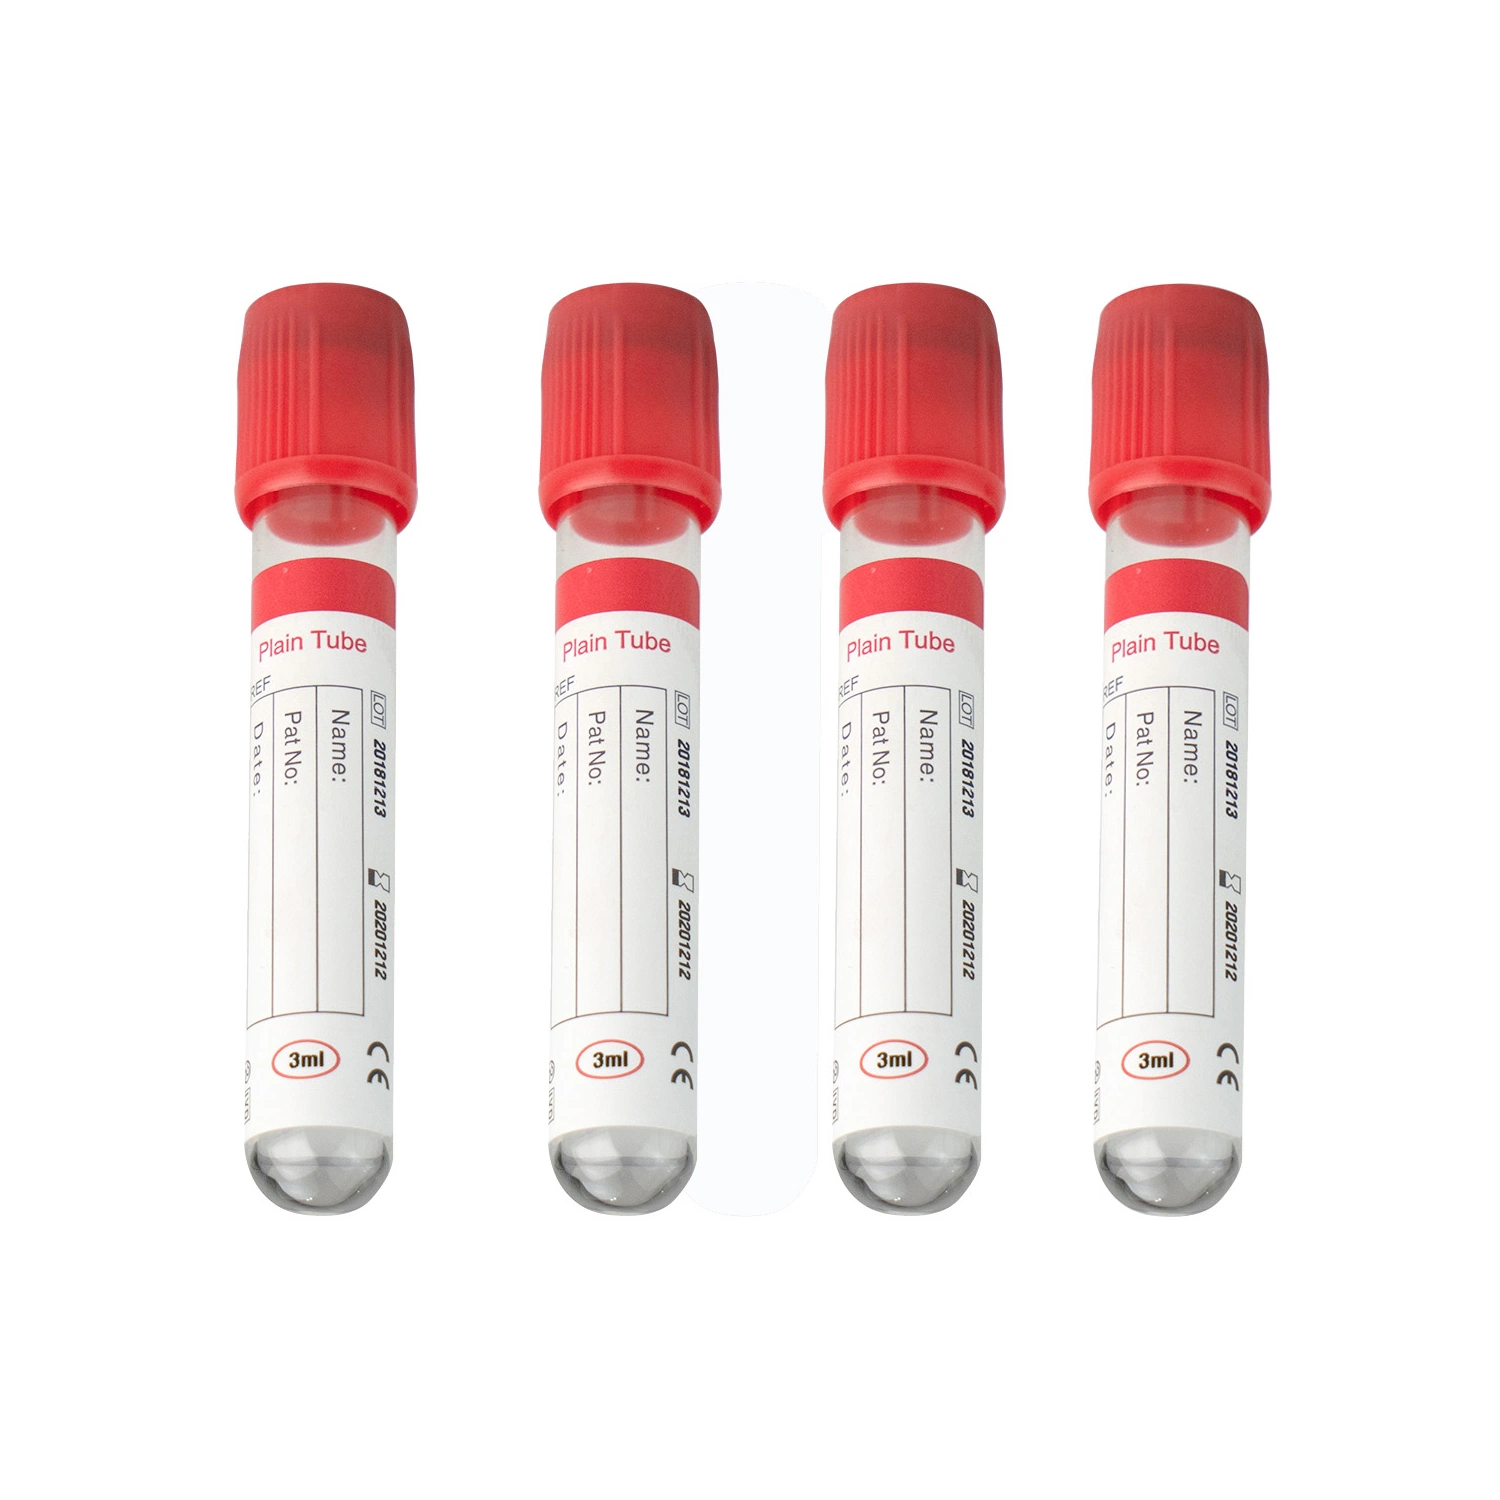 Medizinische Einmalartikel EDTA Blutschlauch 13*75/13*100/16*100mm 3-10ml kein Zusatz-Plain Vakuumröhrchen Zur Blutentnahme